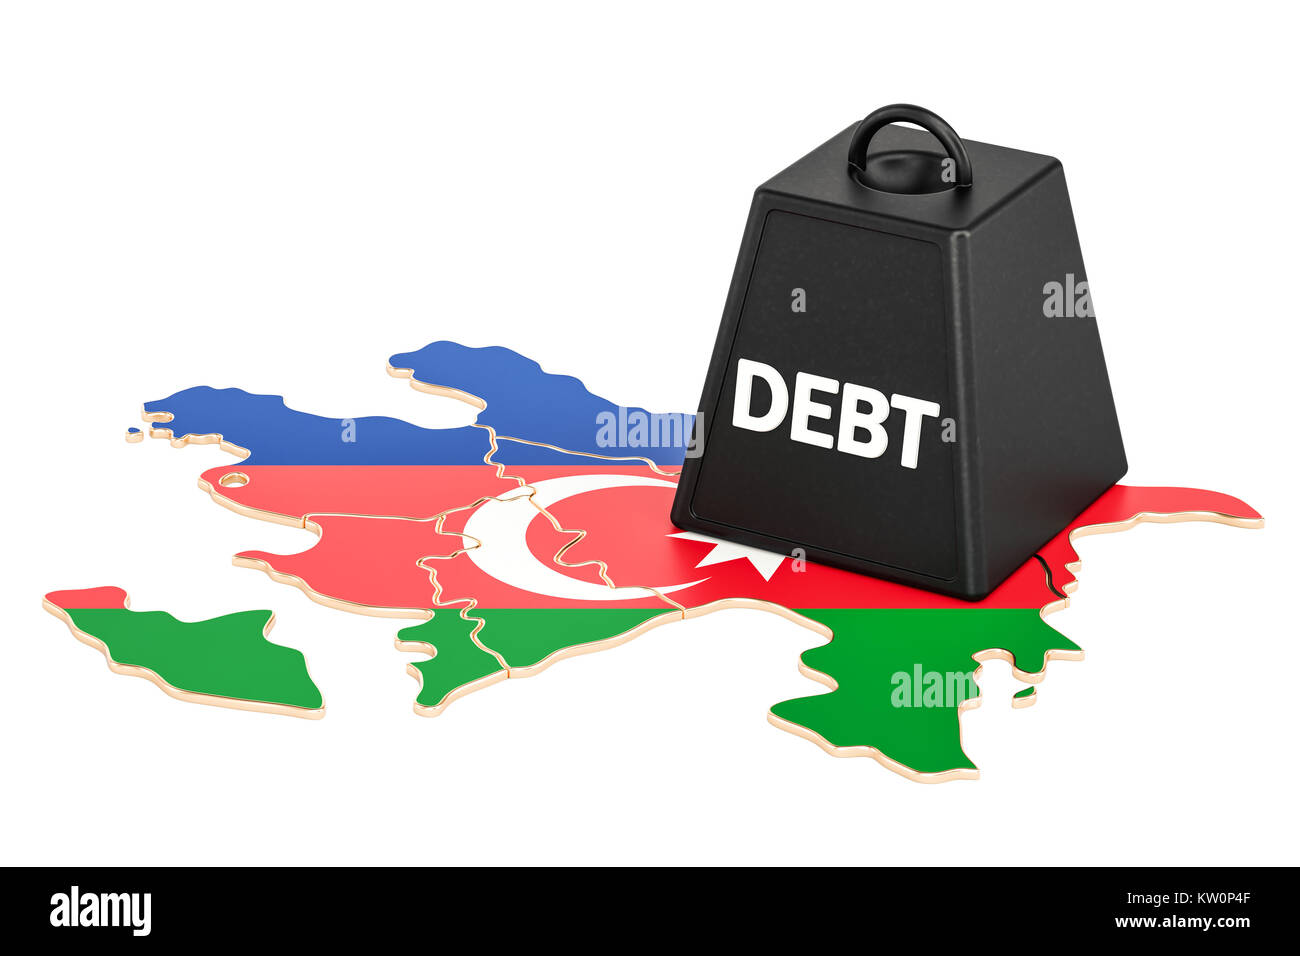 Aserbaidschan nationale Verschuldung und Haushaltsdefizit, Finanzkrise Konzept, 3D-Rendering Stockfoto